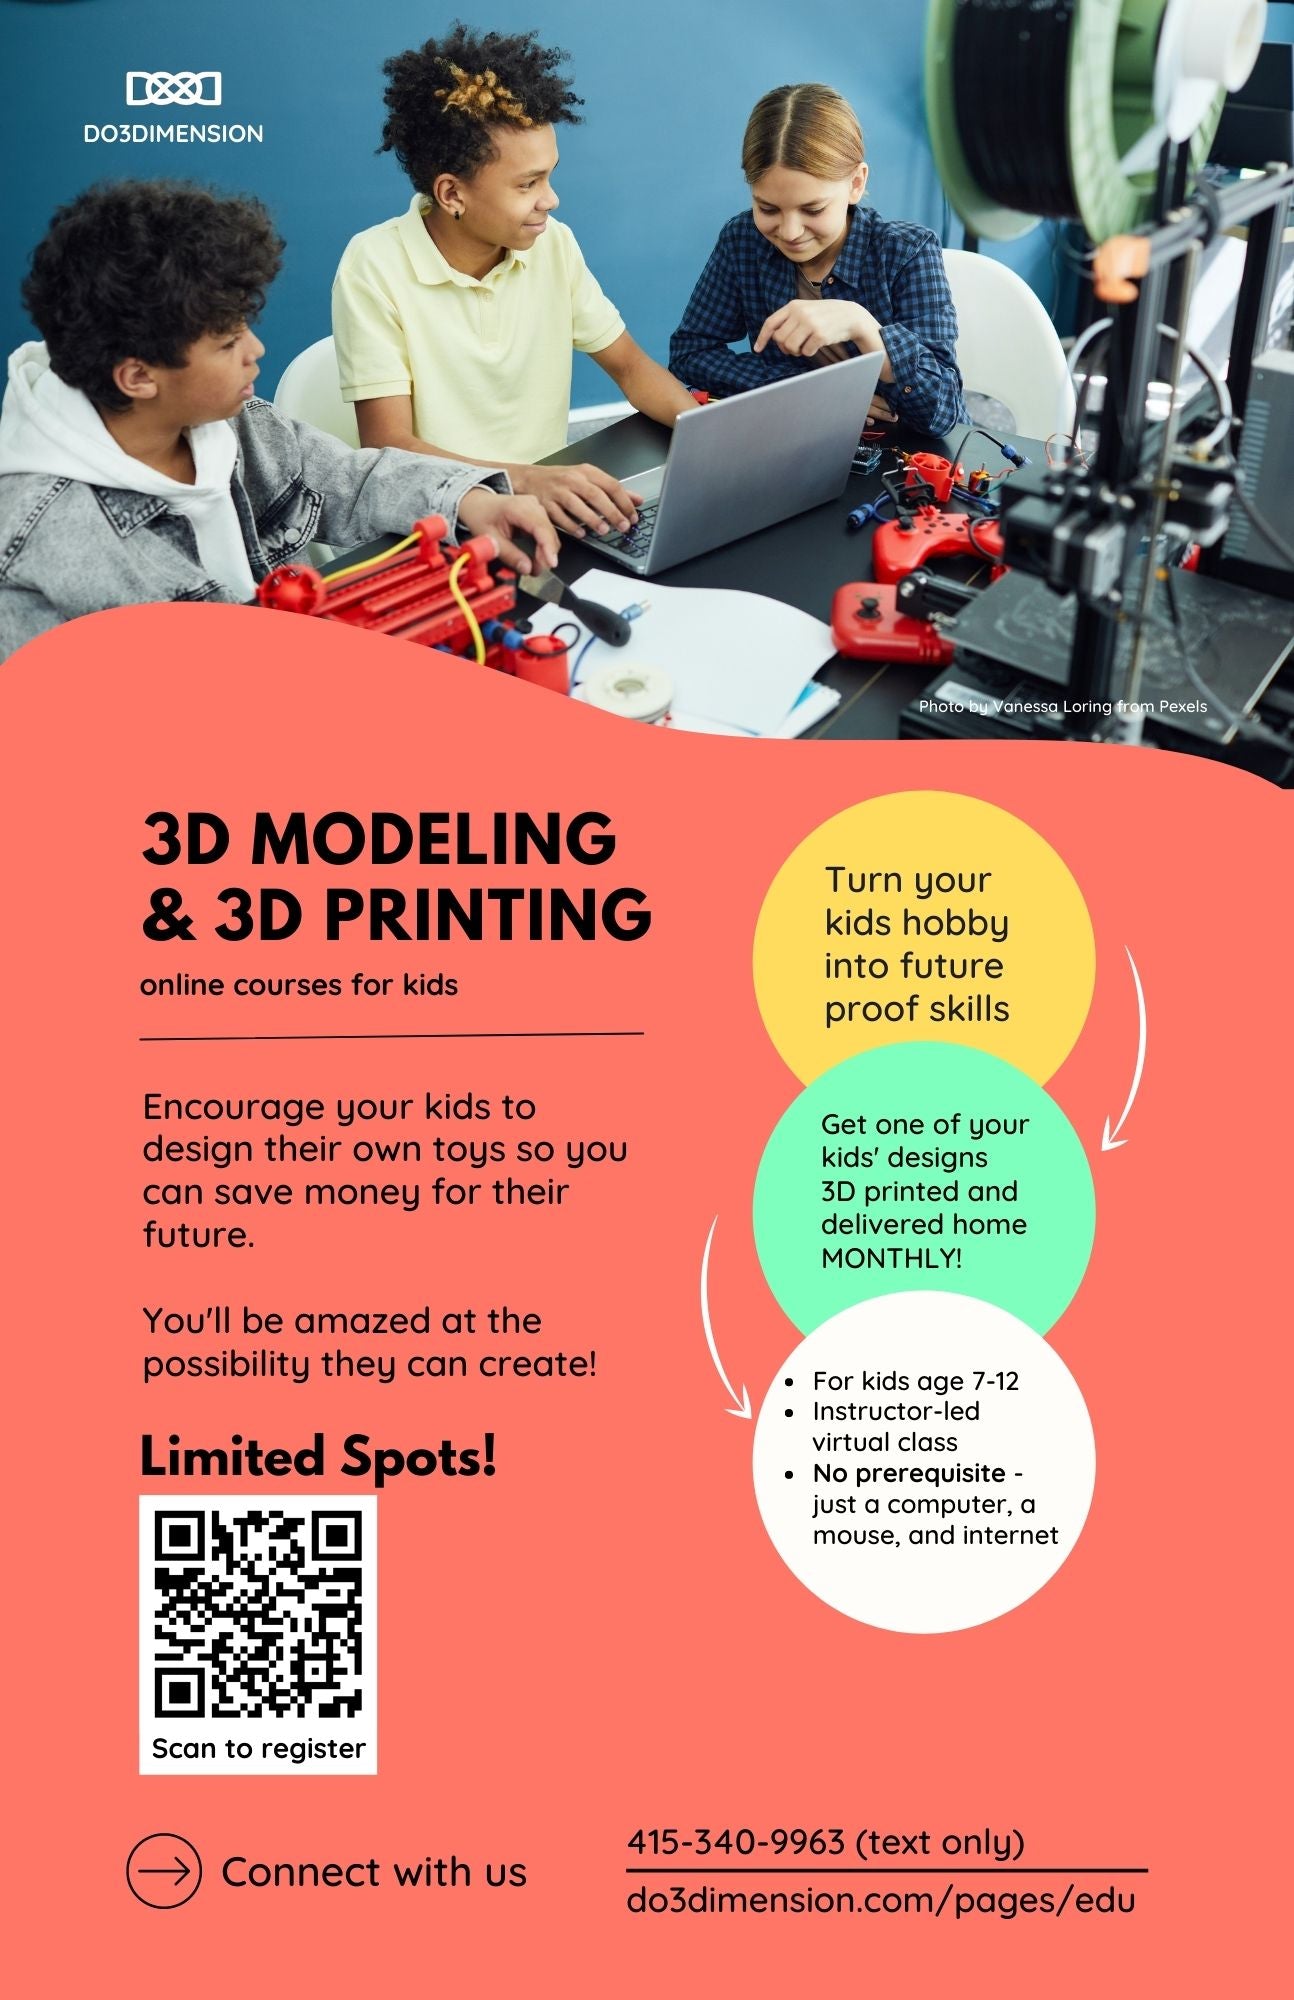 3D Printing Experience Workshop